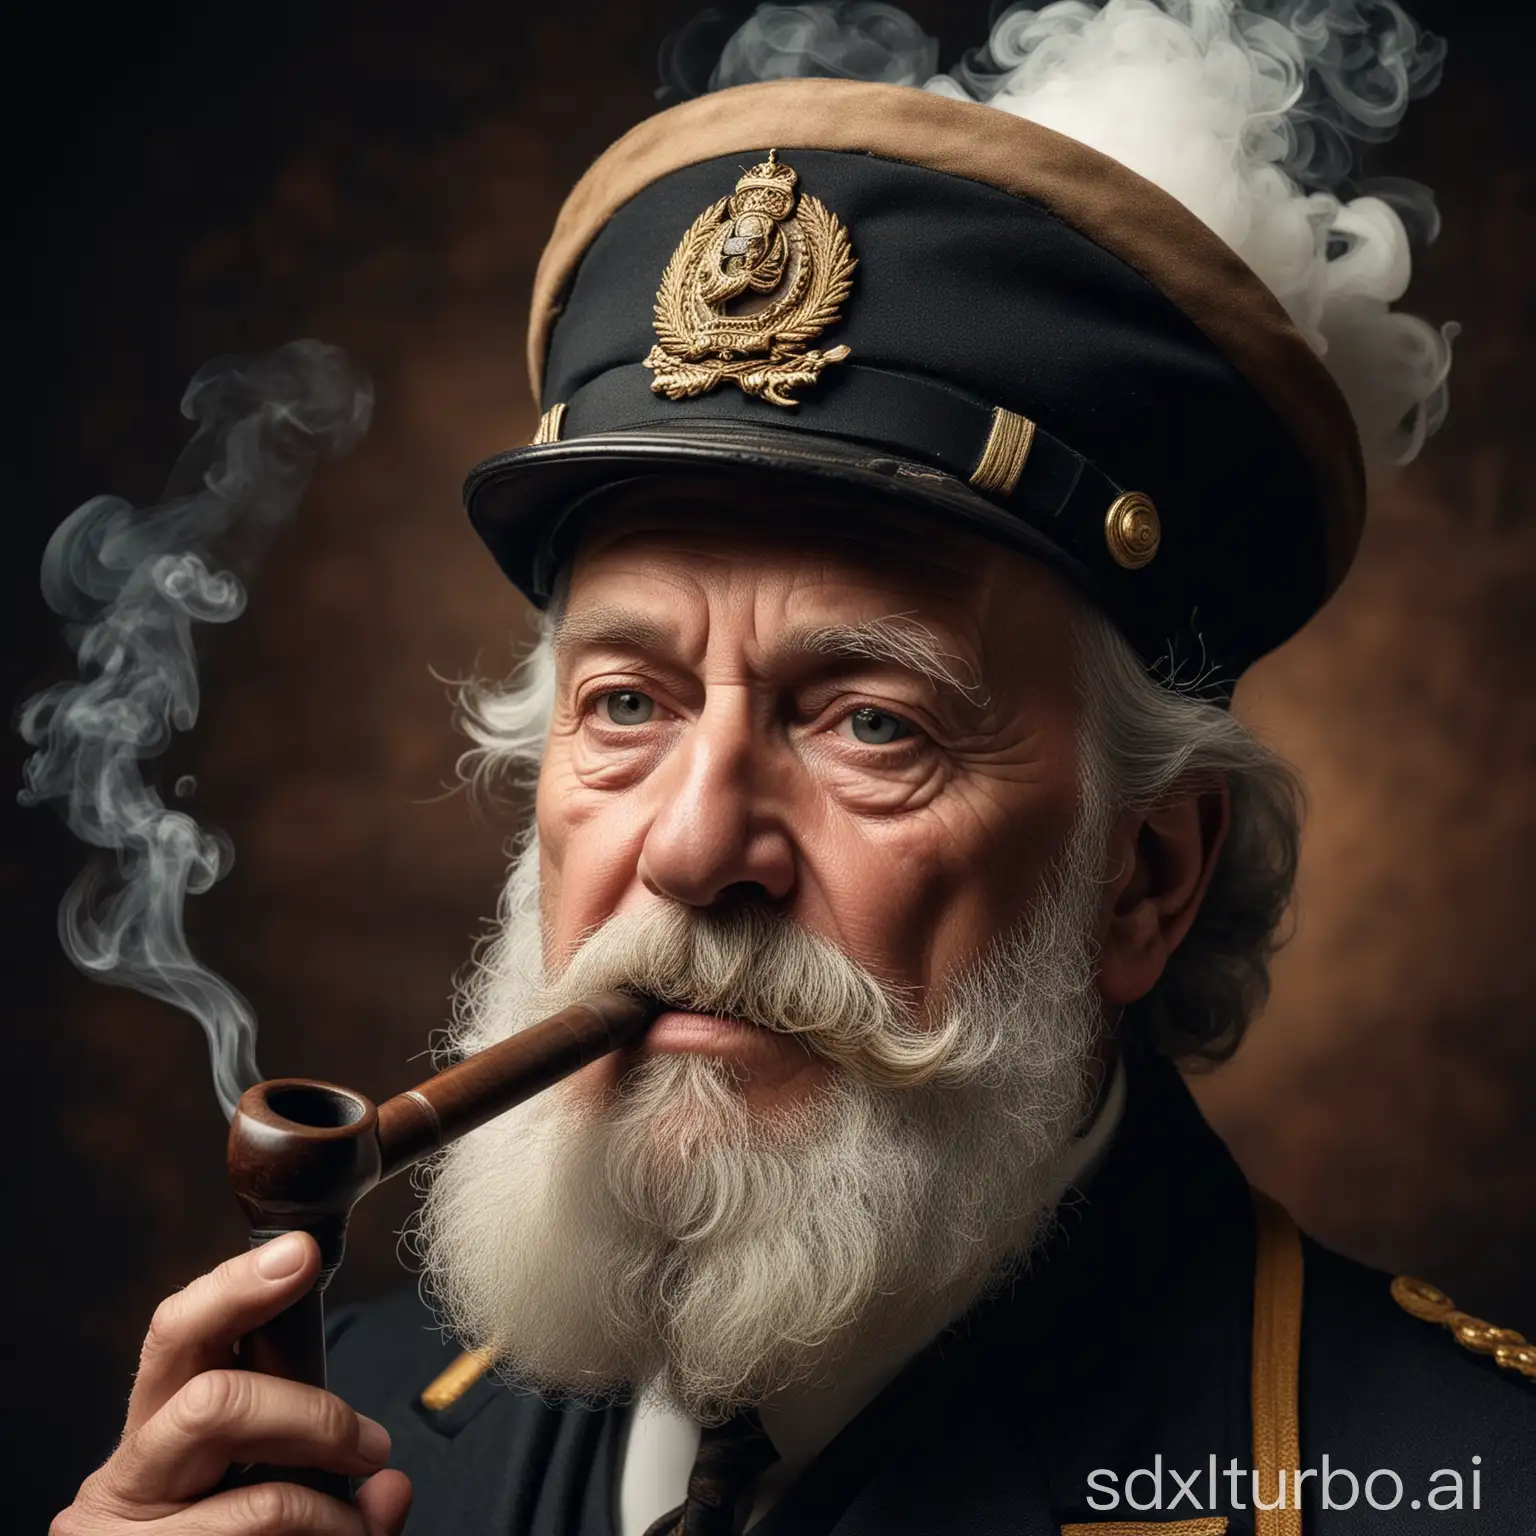 Foto superscharf. Porträt von einem alten Kapitän mit einer Pfeife im Mund und einer Kapitänsmütze. Er soll einen Vollbart haben, das Gesicht ist faltig. Aus der Tabackpfeife steigt Rauch auf.
